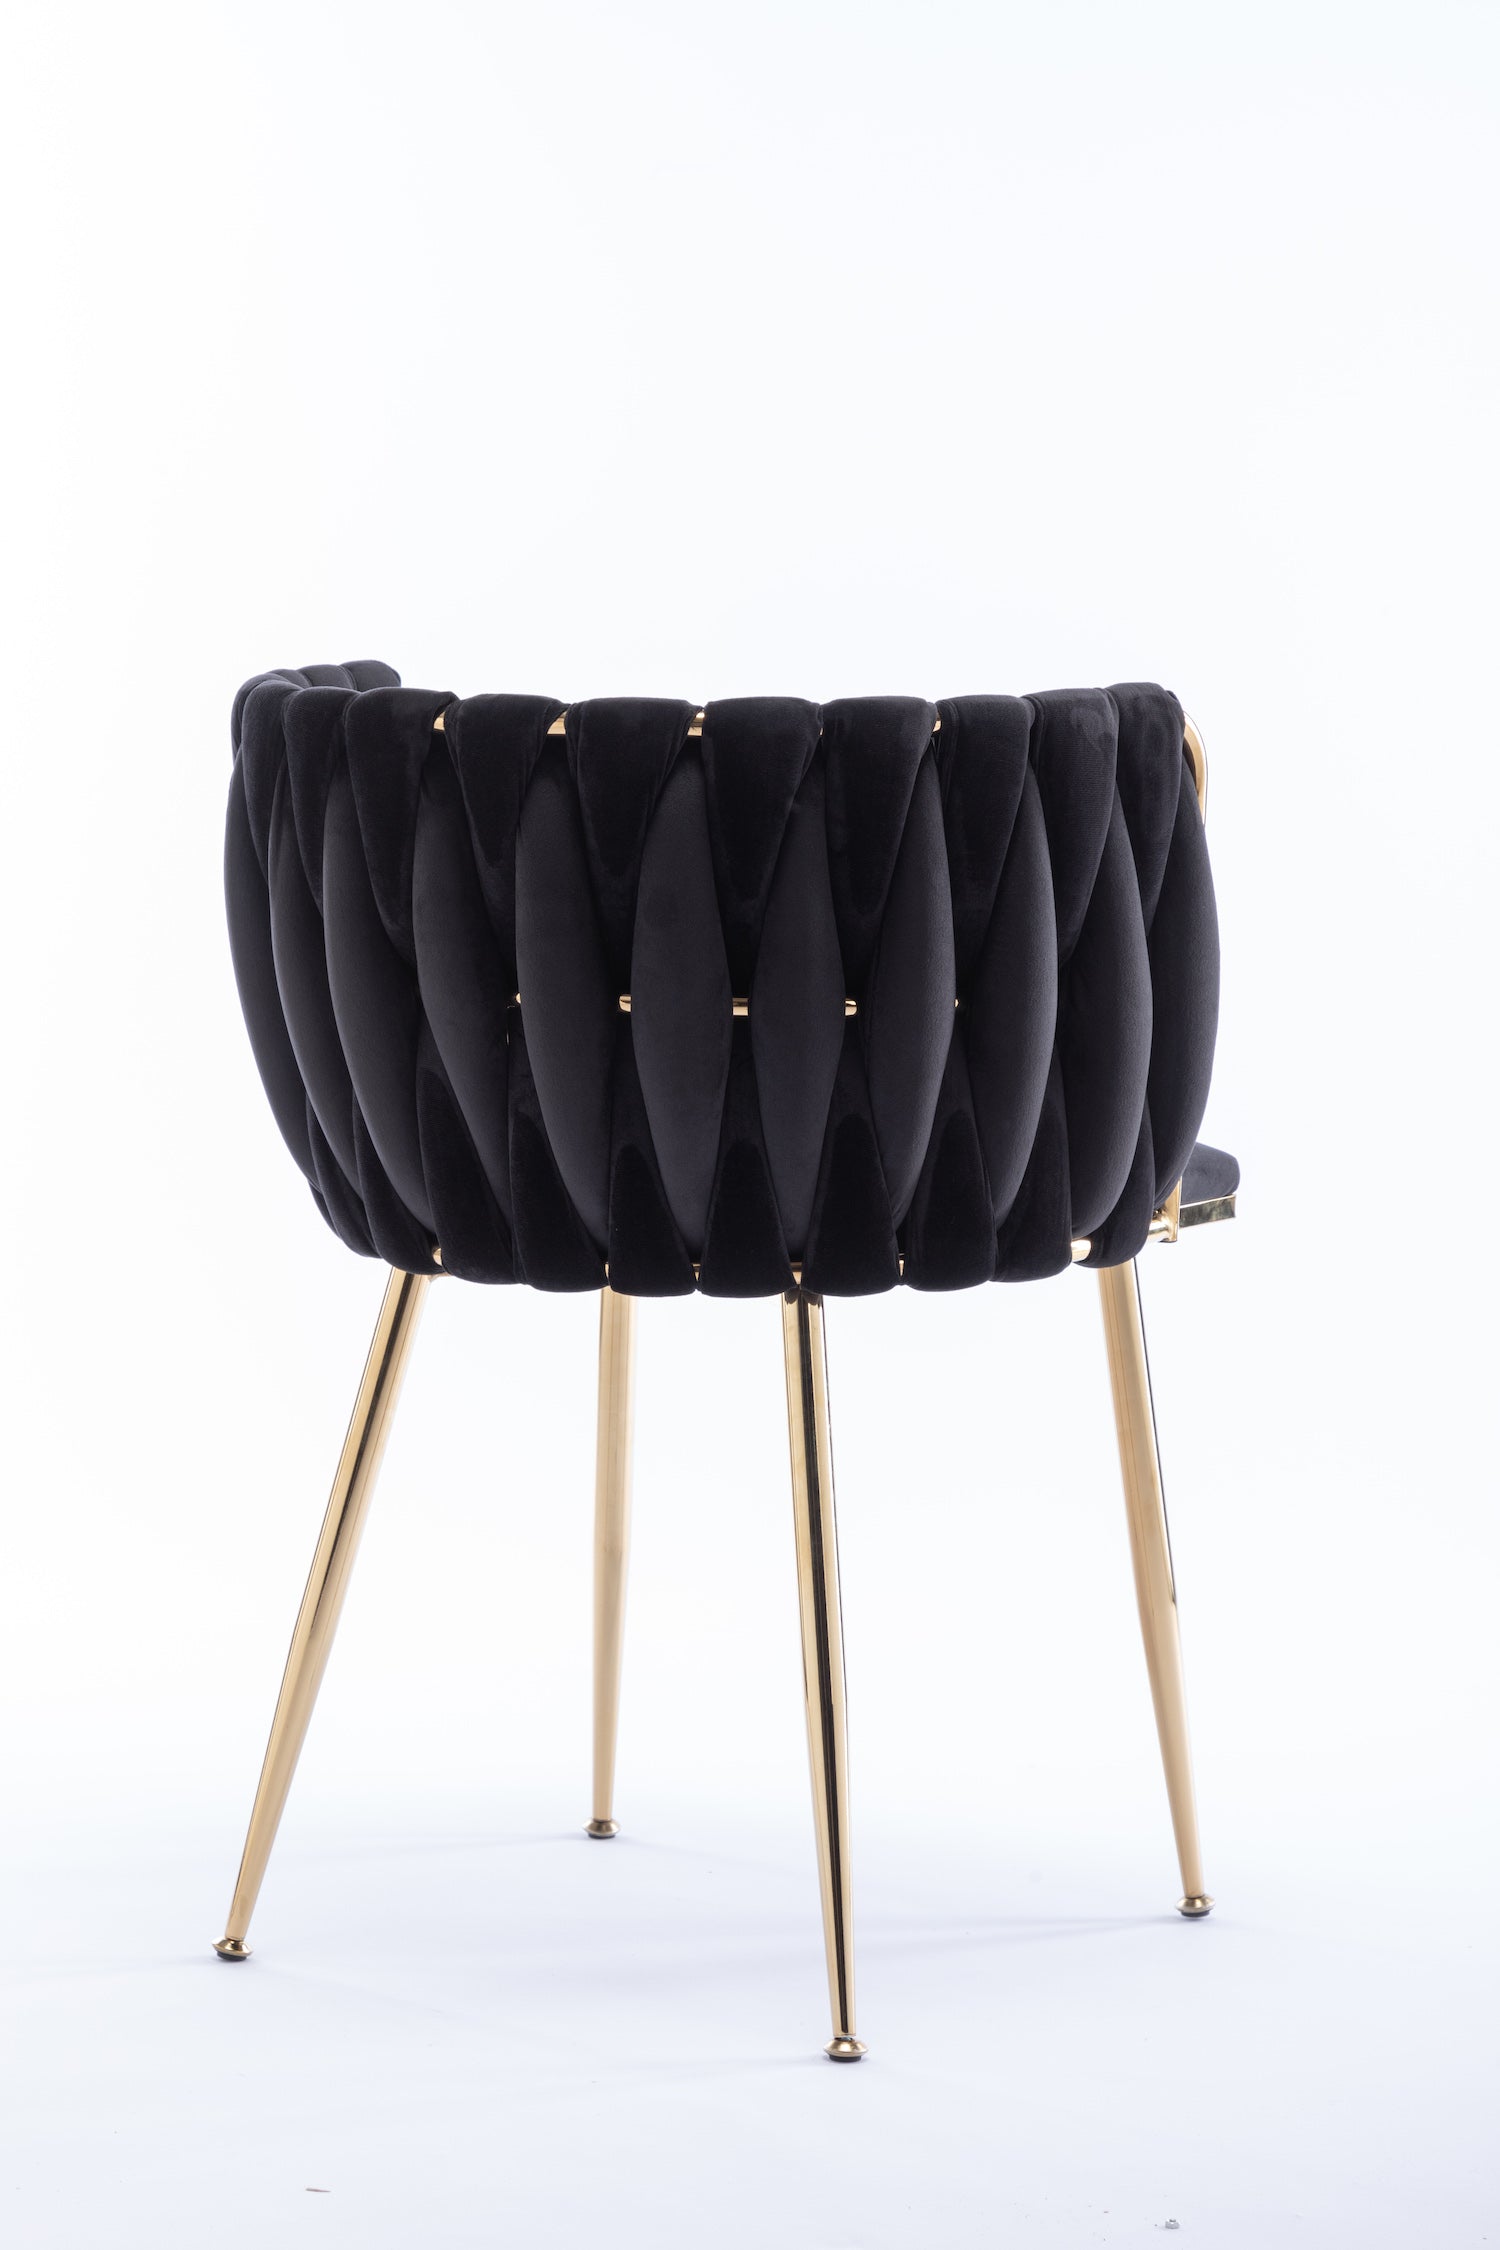 WeeHaa Modern Gold Framed Velvet Dining Chairs Set of 2 - Black